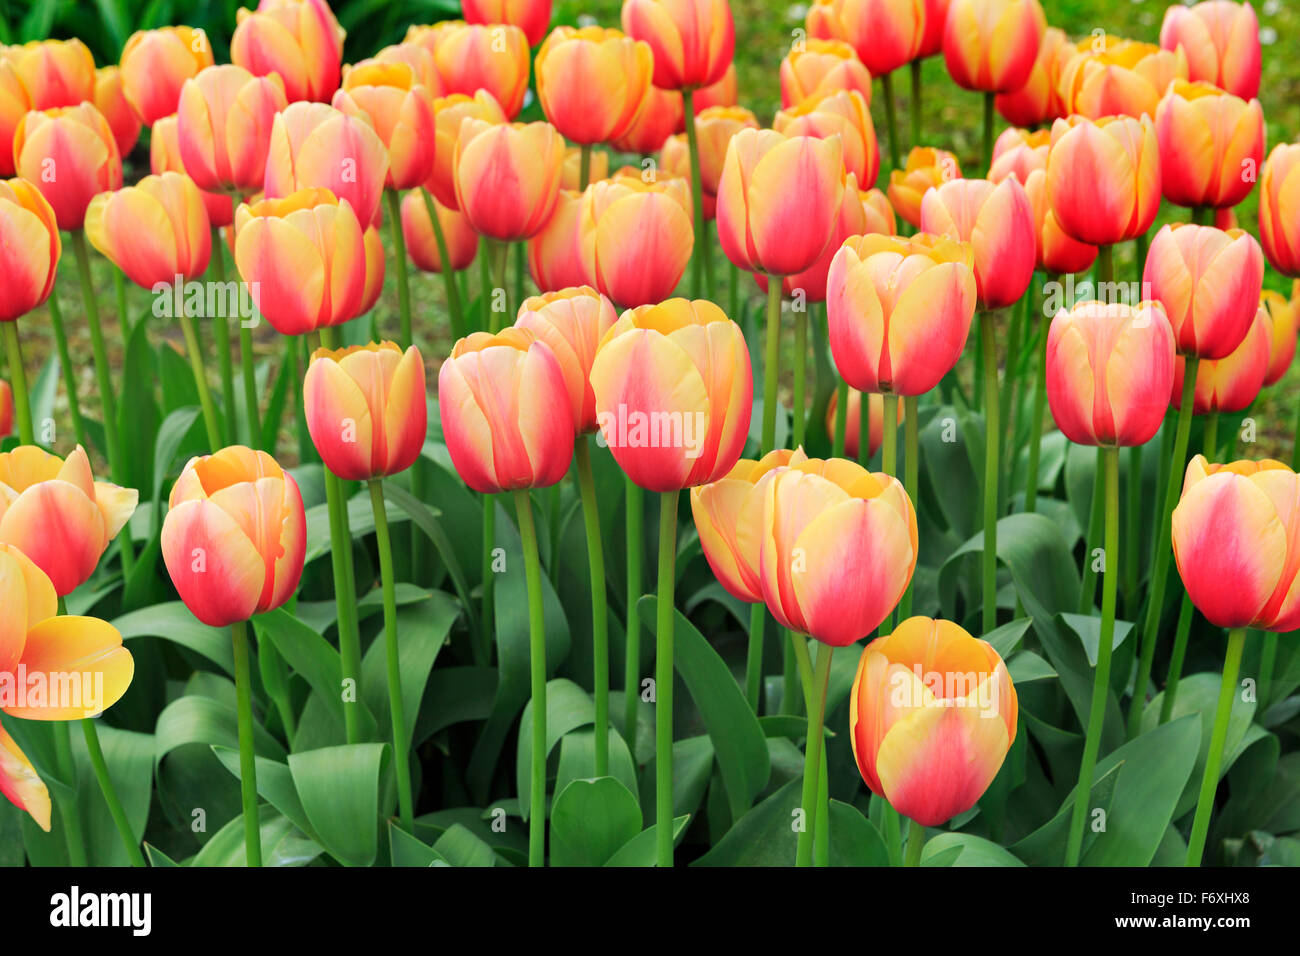 Flowering Darwin hybrid tulips (Tulipa fosteriana), Marit variety, yellow, red, Germany Stock Photo